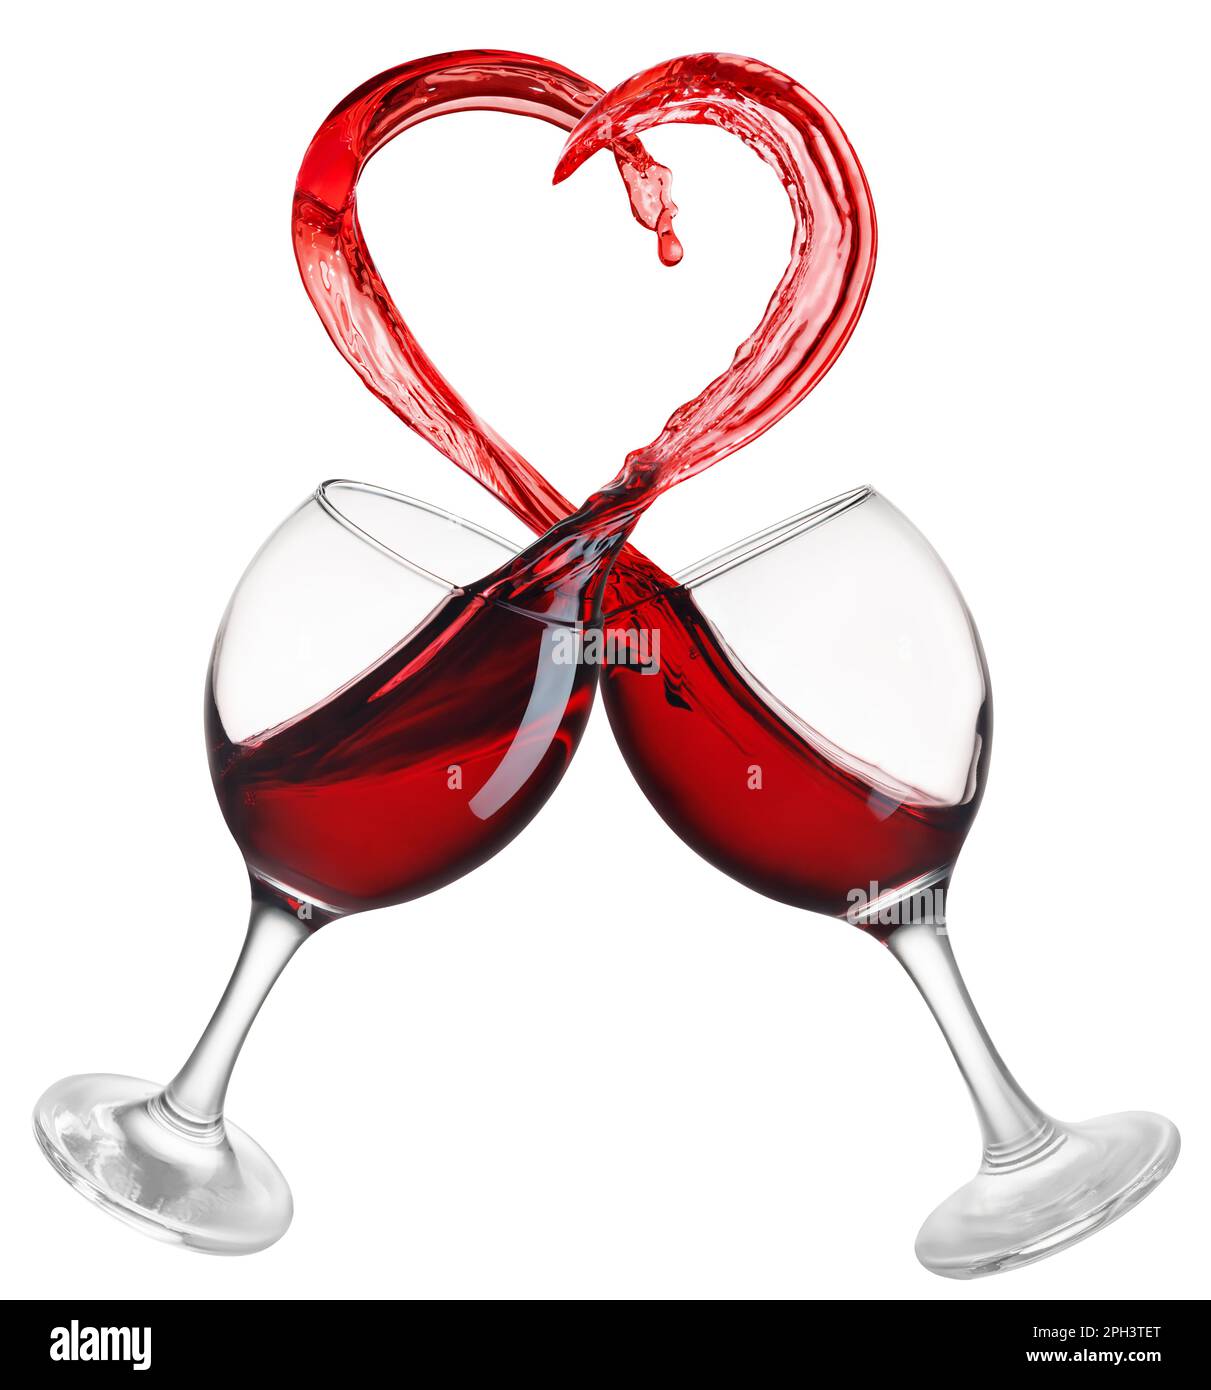 deux verres de vin rouge avec un coeur en forme de splash isolé sur fond blanc Banque D'Images